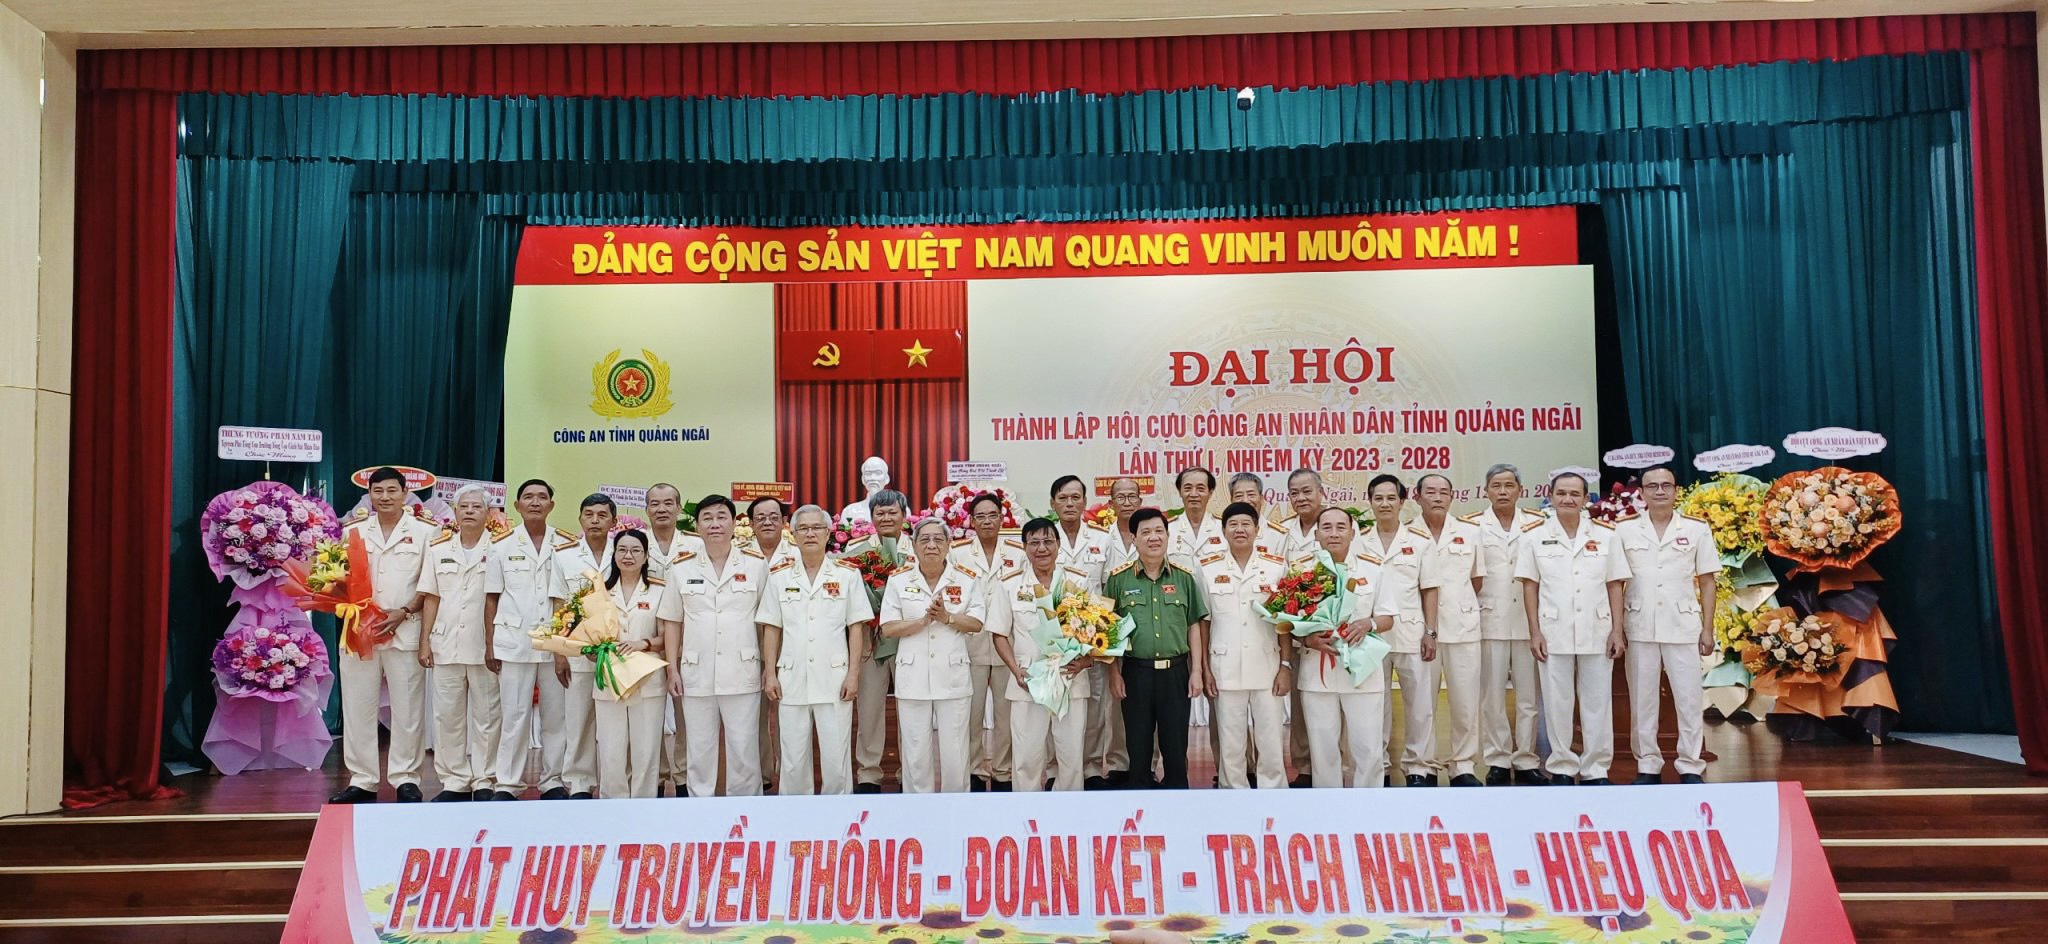 Tổ chức thành công Đại hội thành lập hội cựu Công an nhân dân tỉnh Quảng Ngãi, lần thứ I, nhiệm kỳ 2023 - 2028